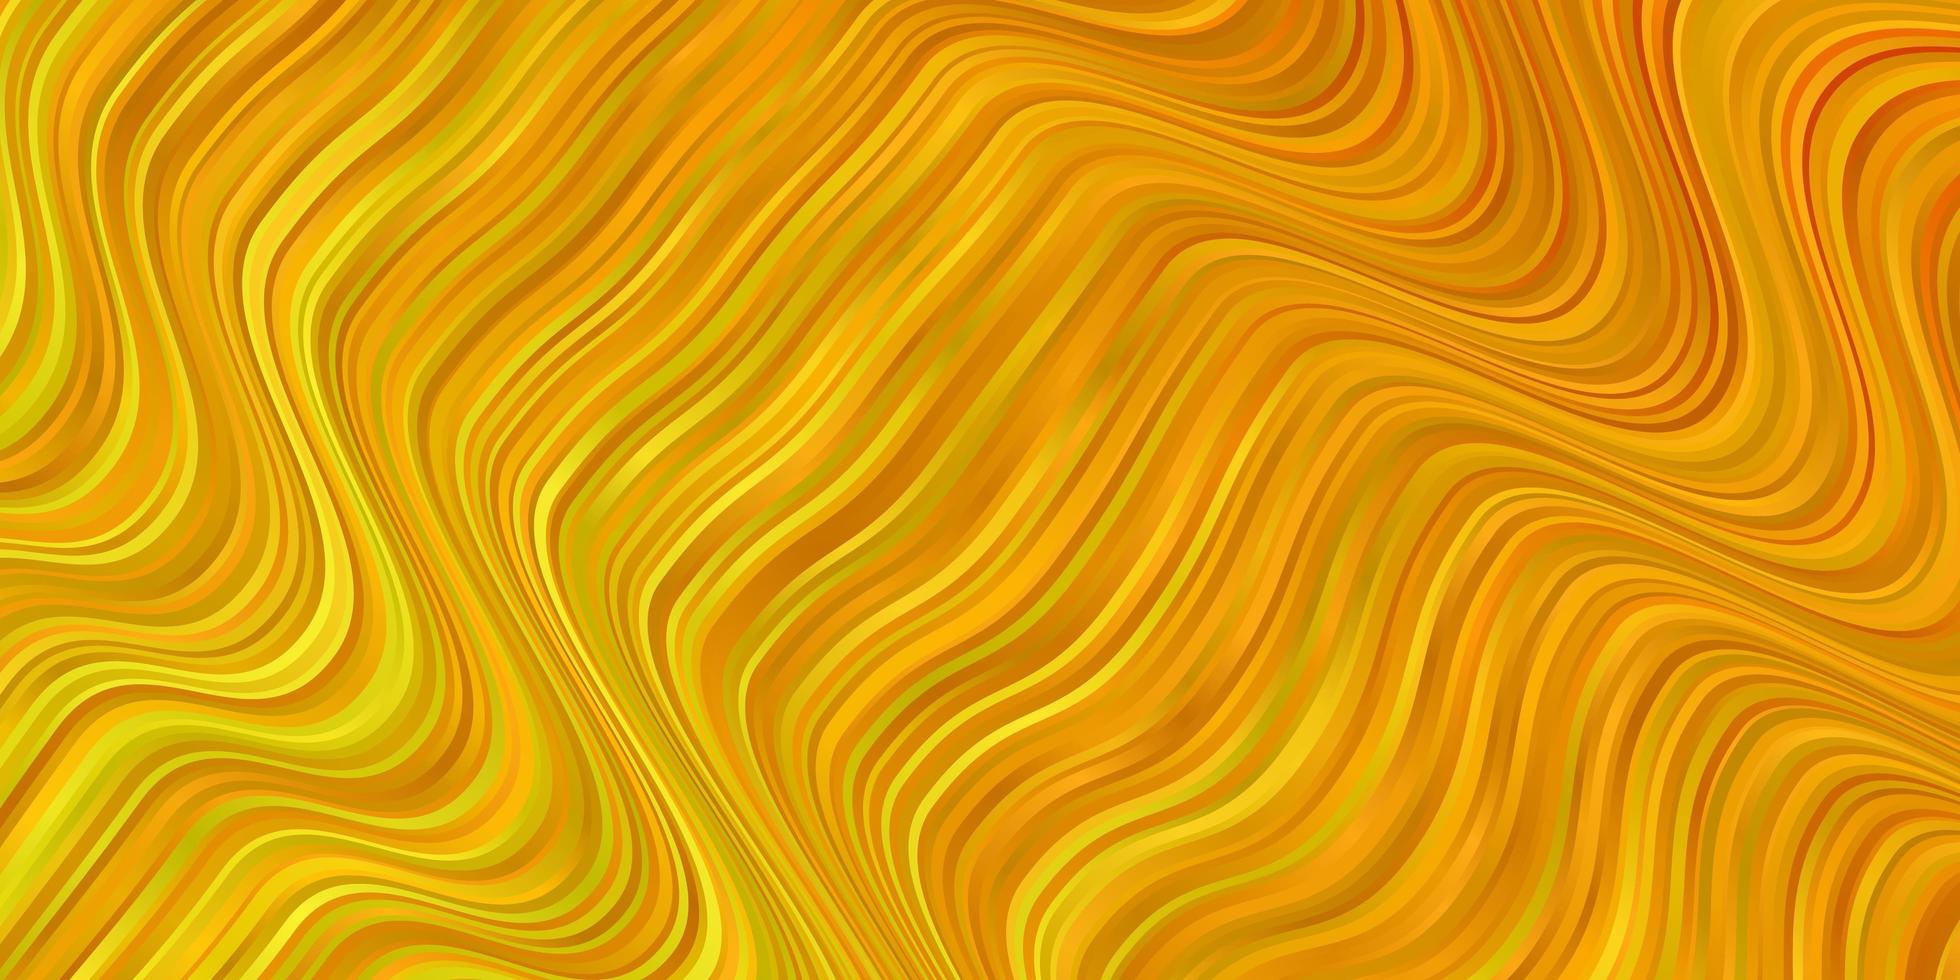 textura de vetor amarelo claro com ilustração colorida de arco circular que consiste em modelo de curvas para telefones celulares